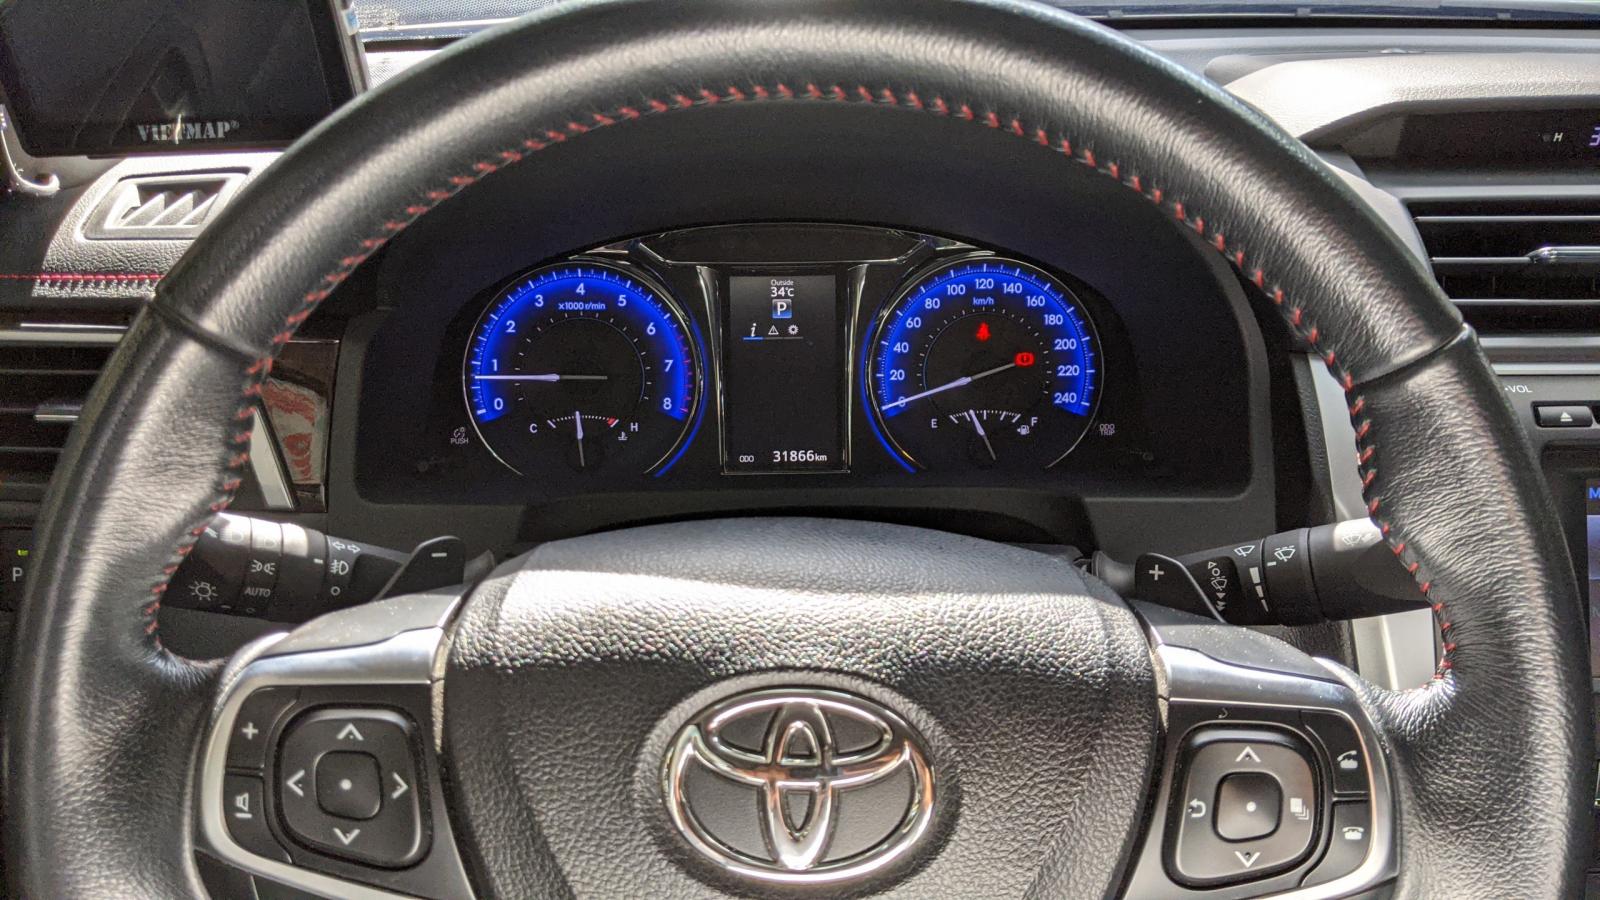 Toyota Camry 2016 - Cần bán xe Toyota Camry đời 2016, màu Nâu Vàng Lướt 31.000km Siêu Đẹp Giá 930tr CÒn fix